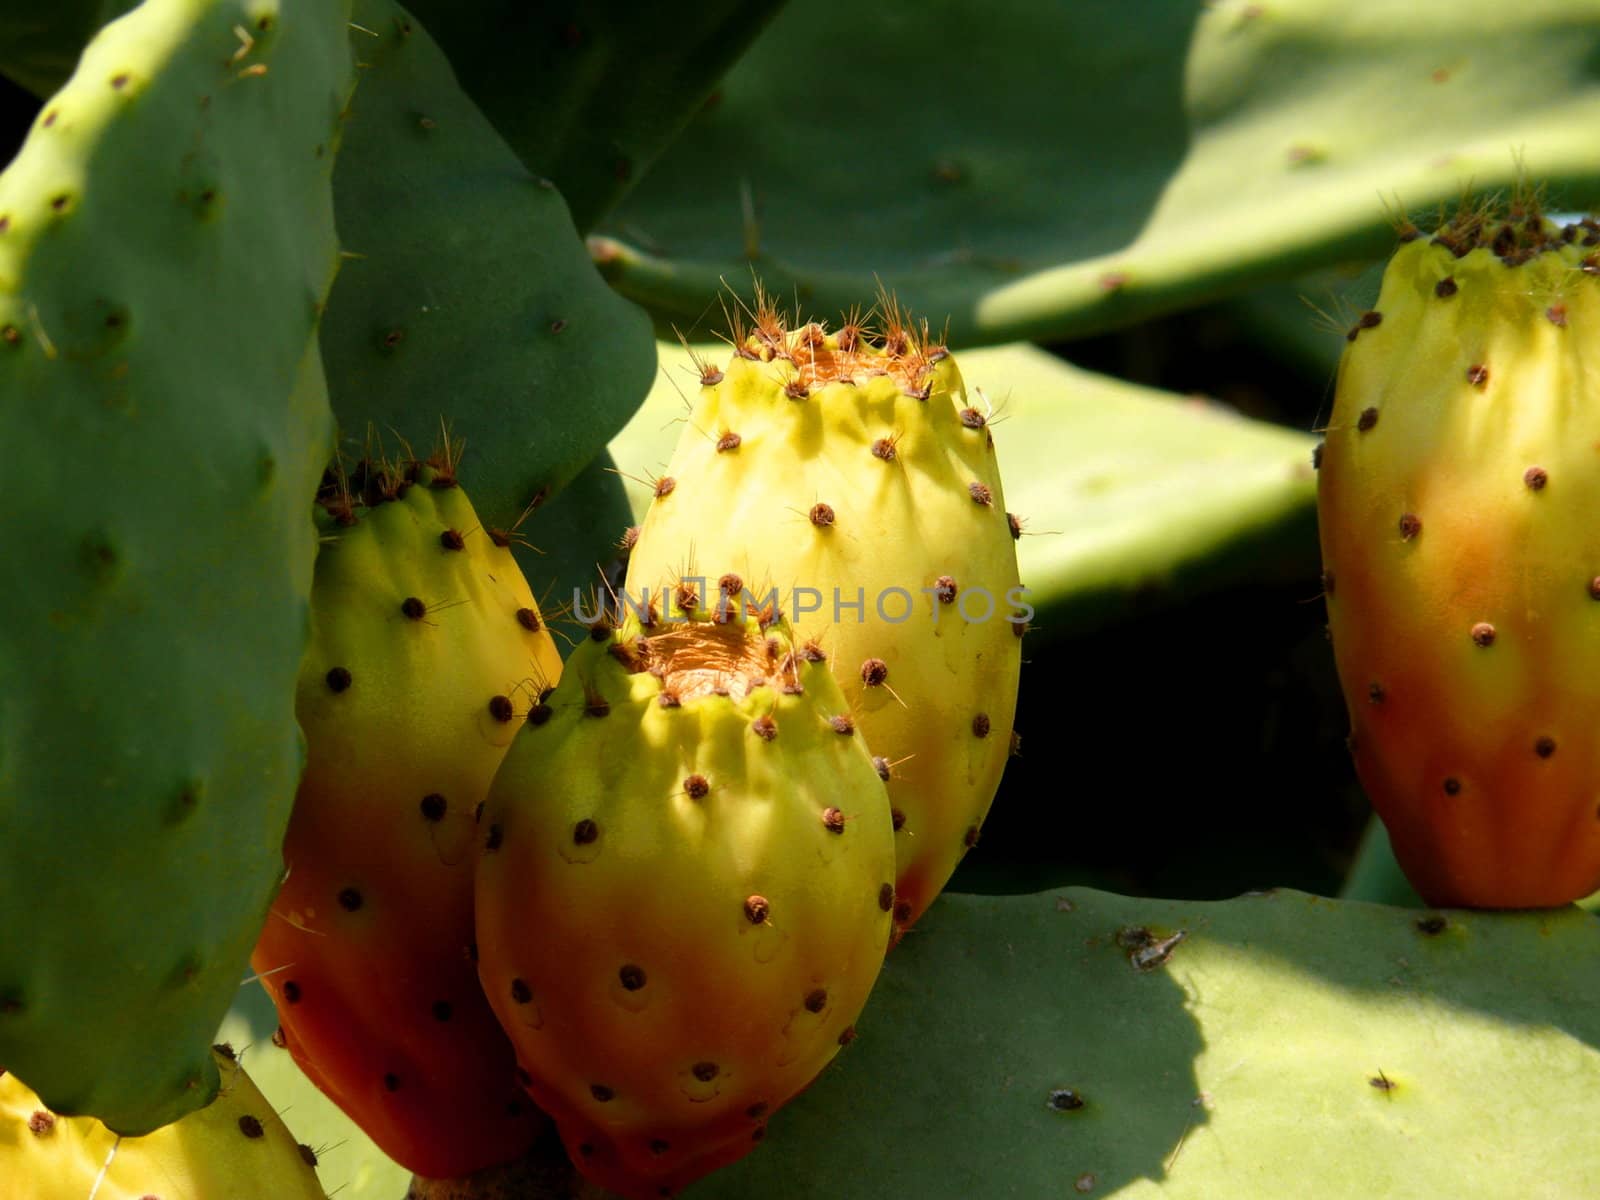 Fruit of cactus by Stoyanov